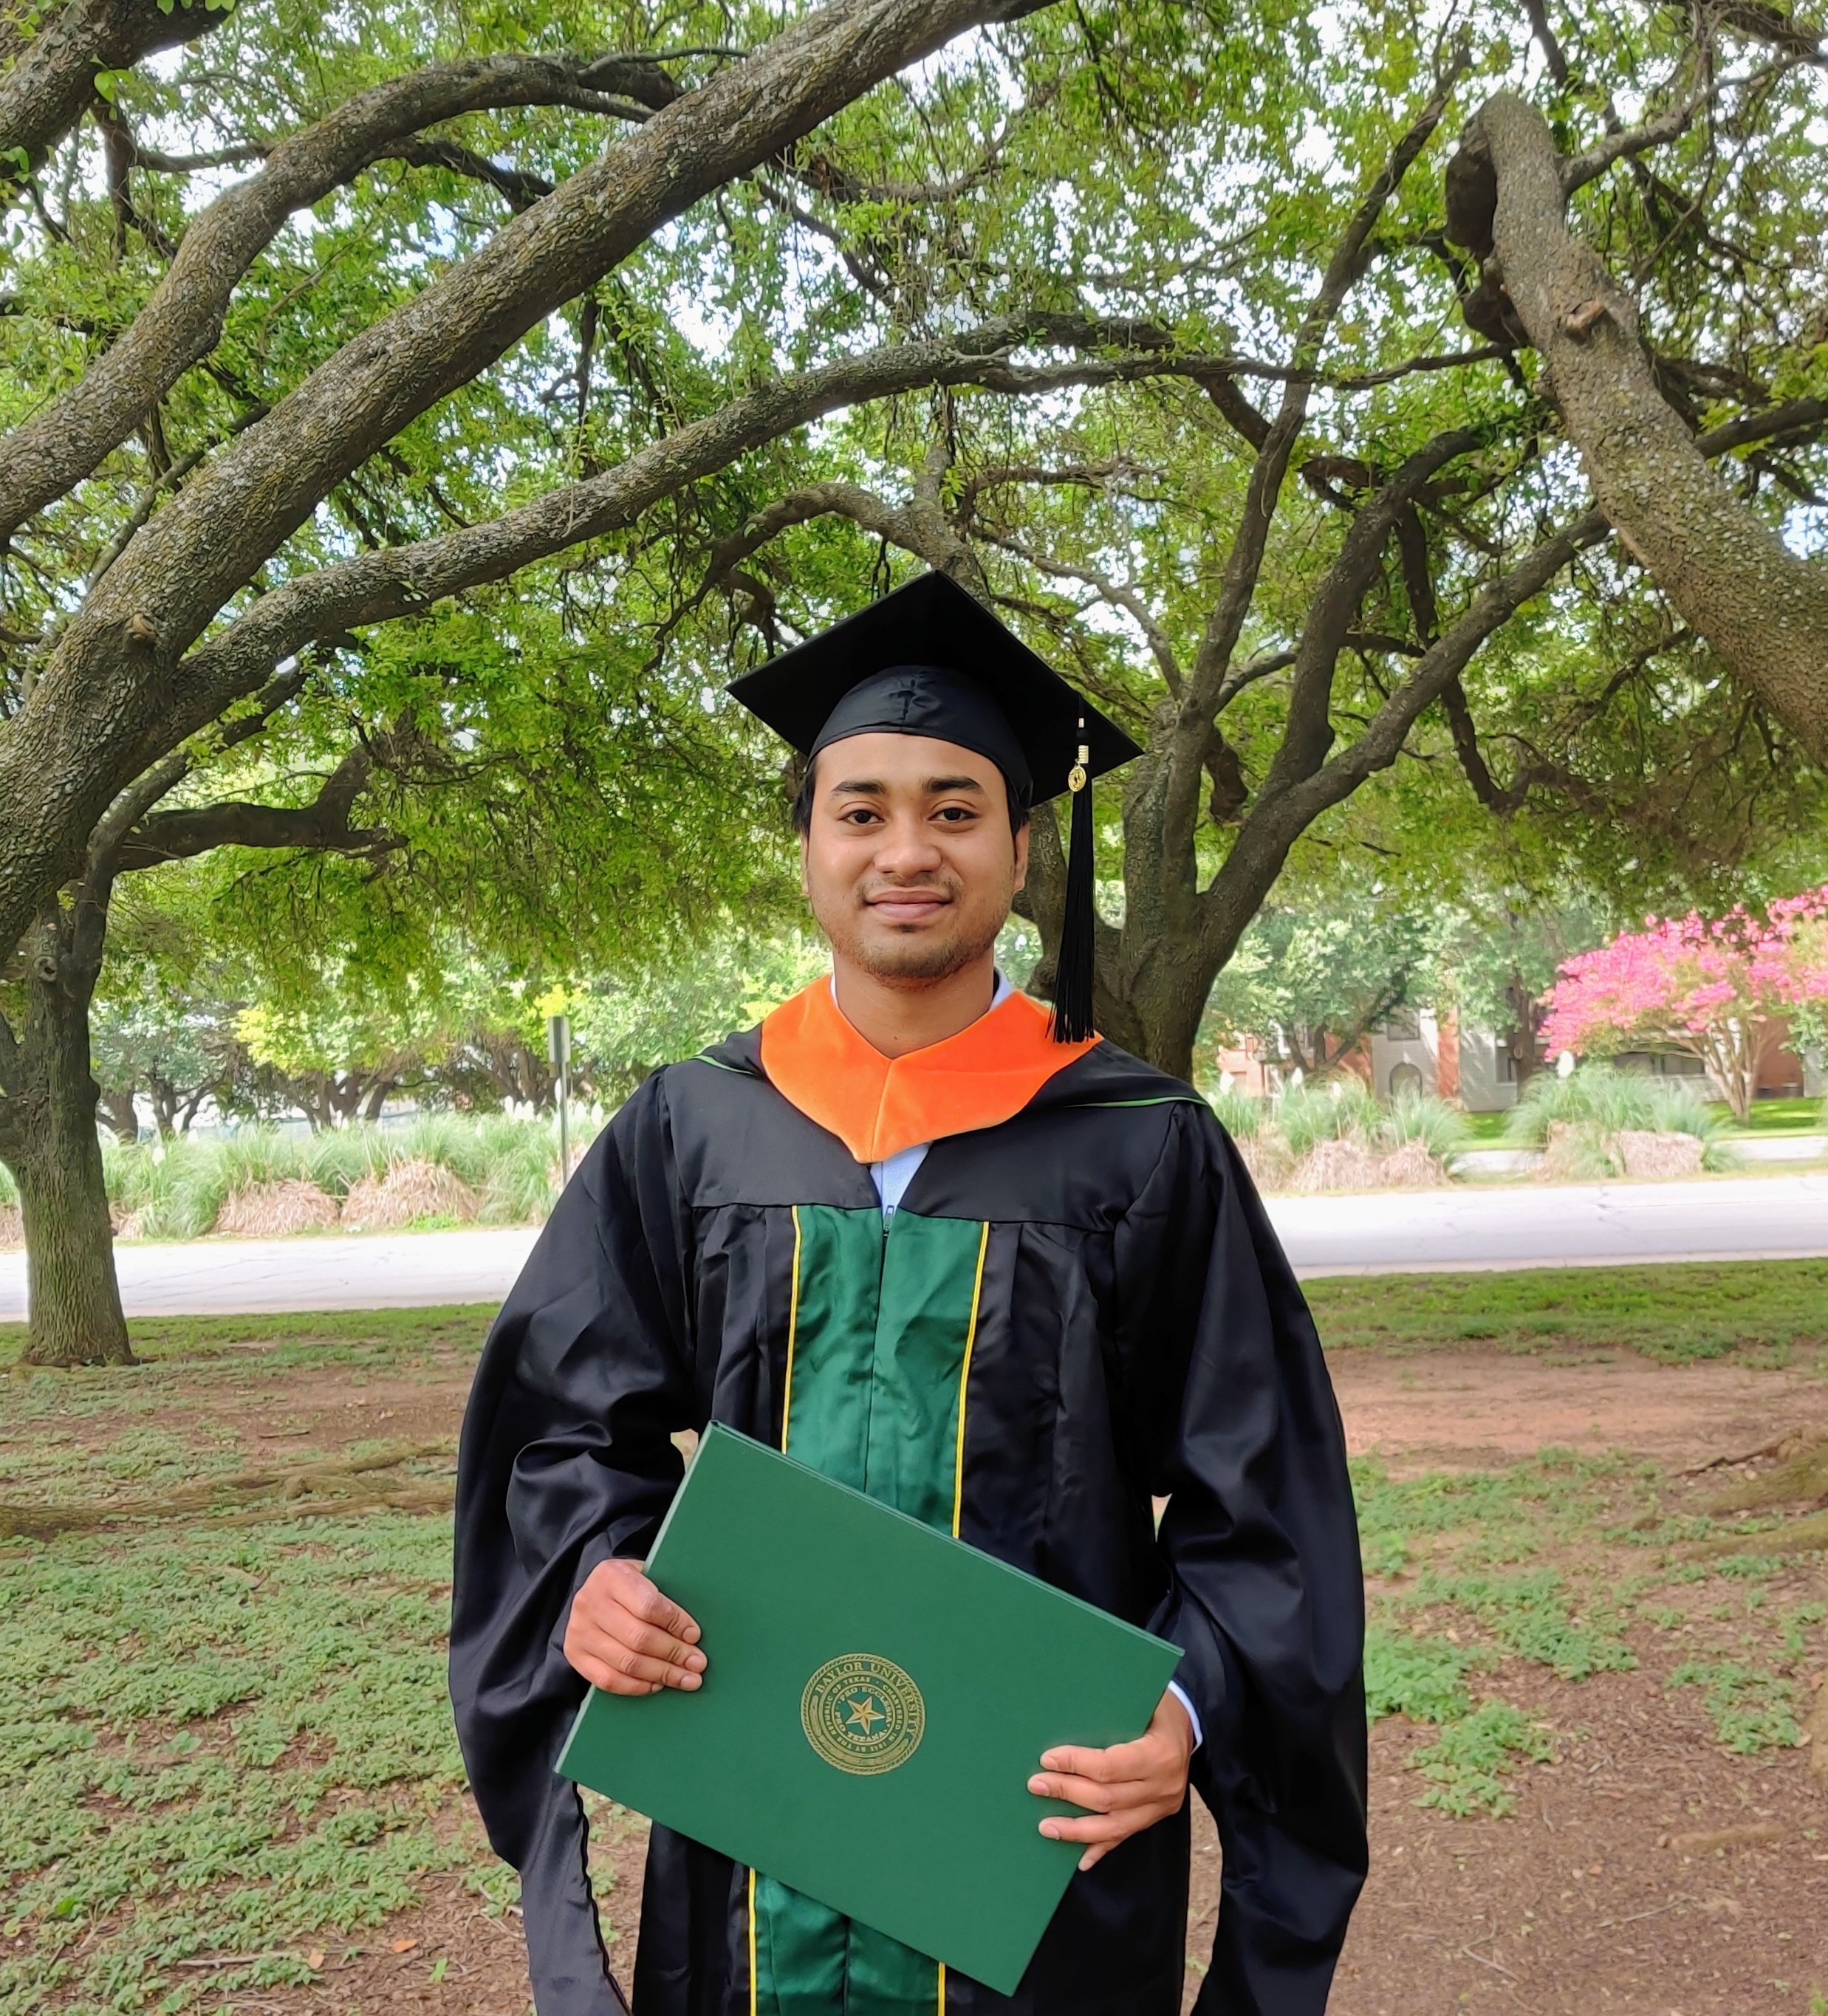 Dipta Das earned his MSCS degree in August 2021